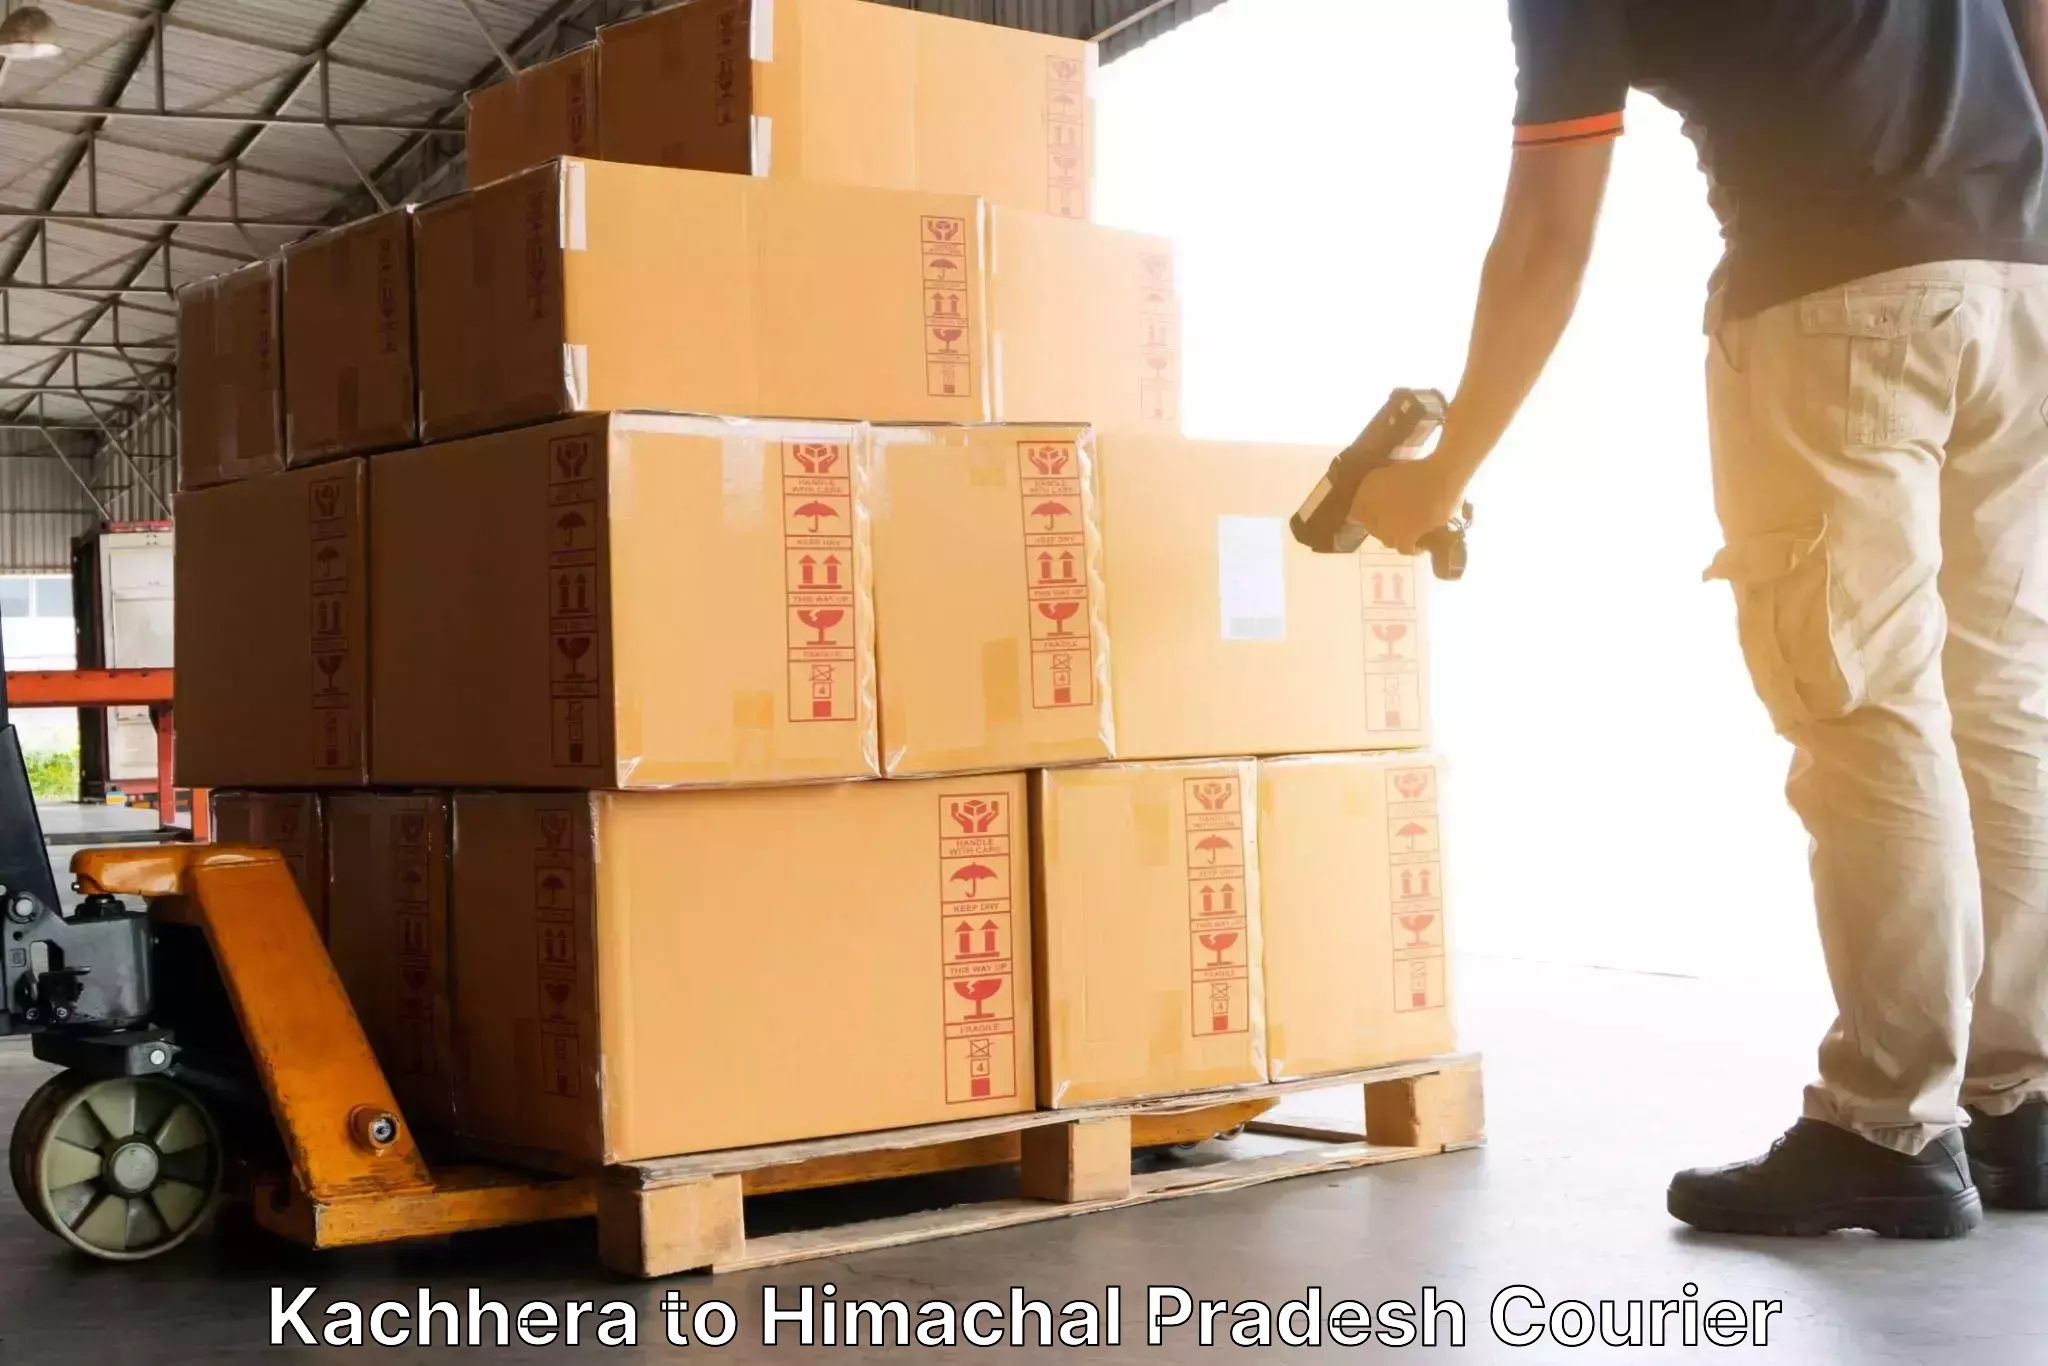 Customizable delivery plans Kachhera to Kachhera